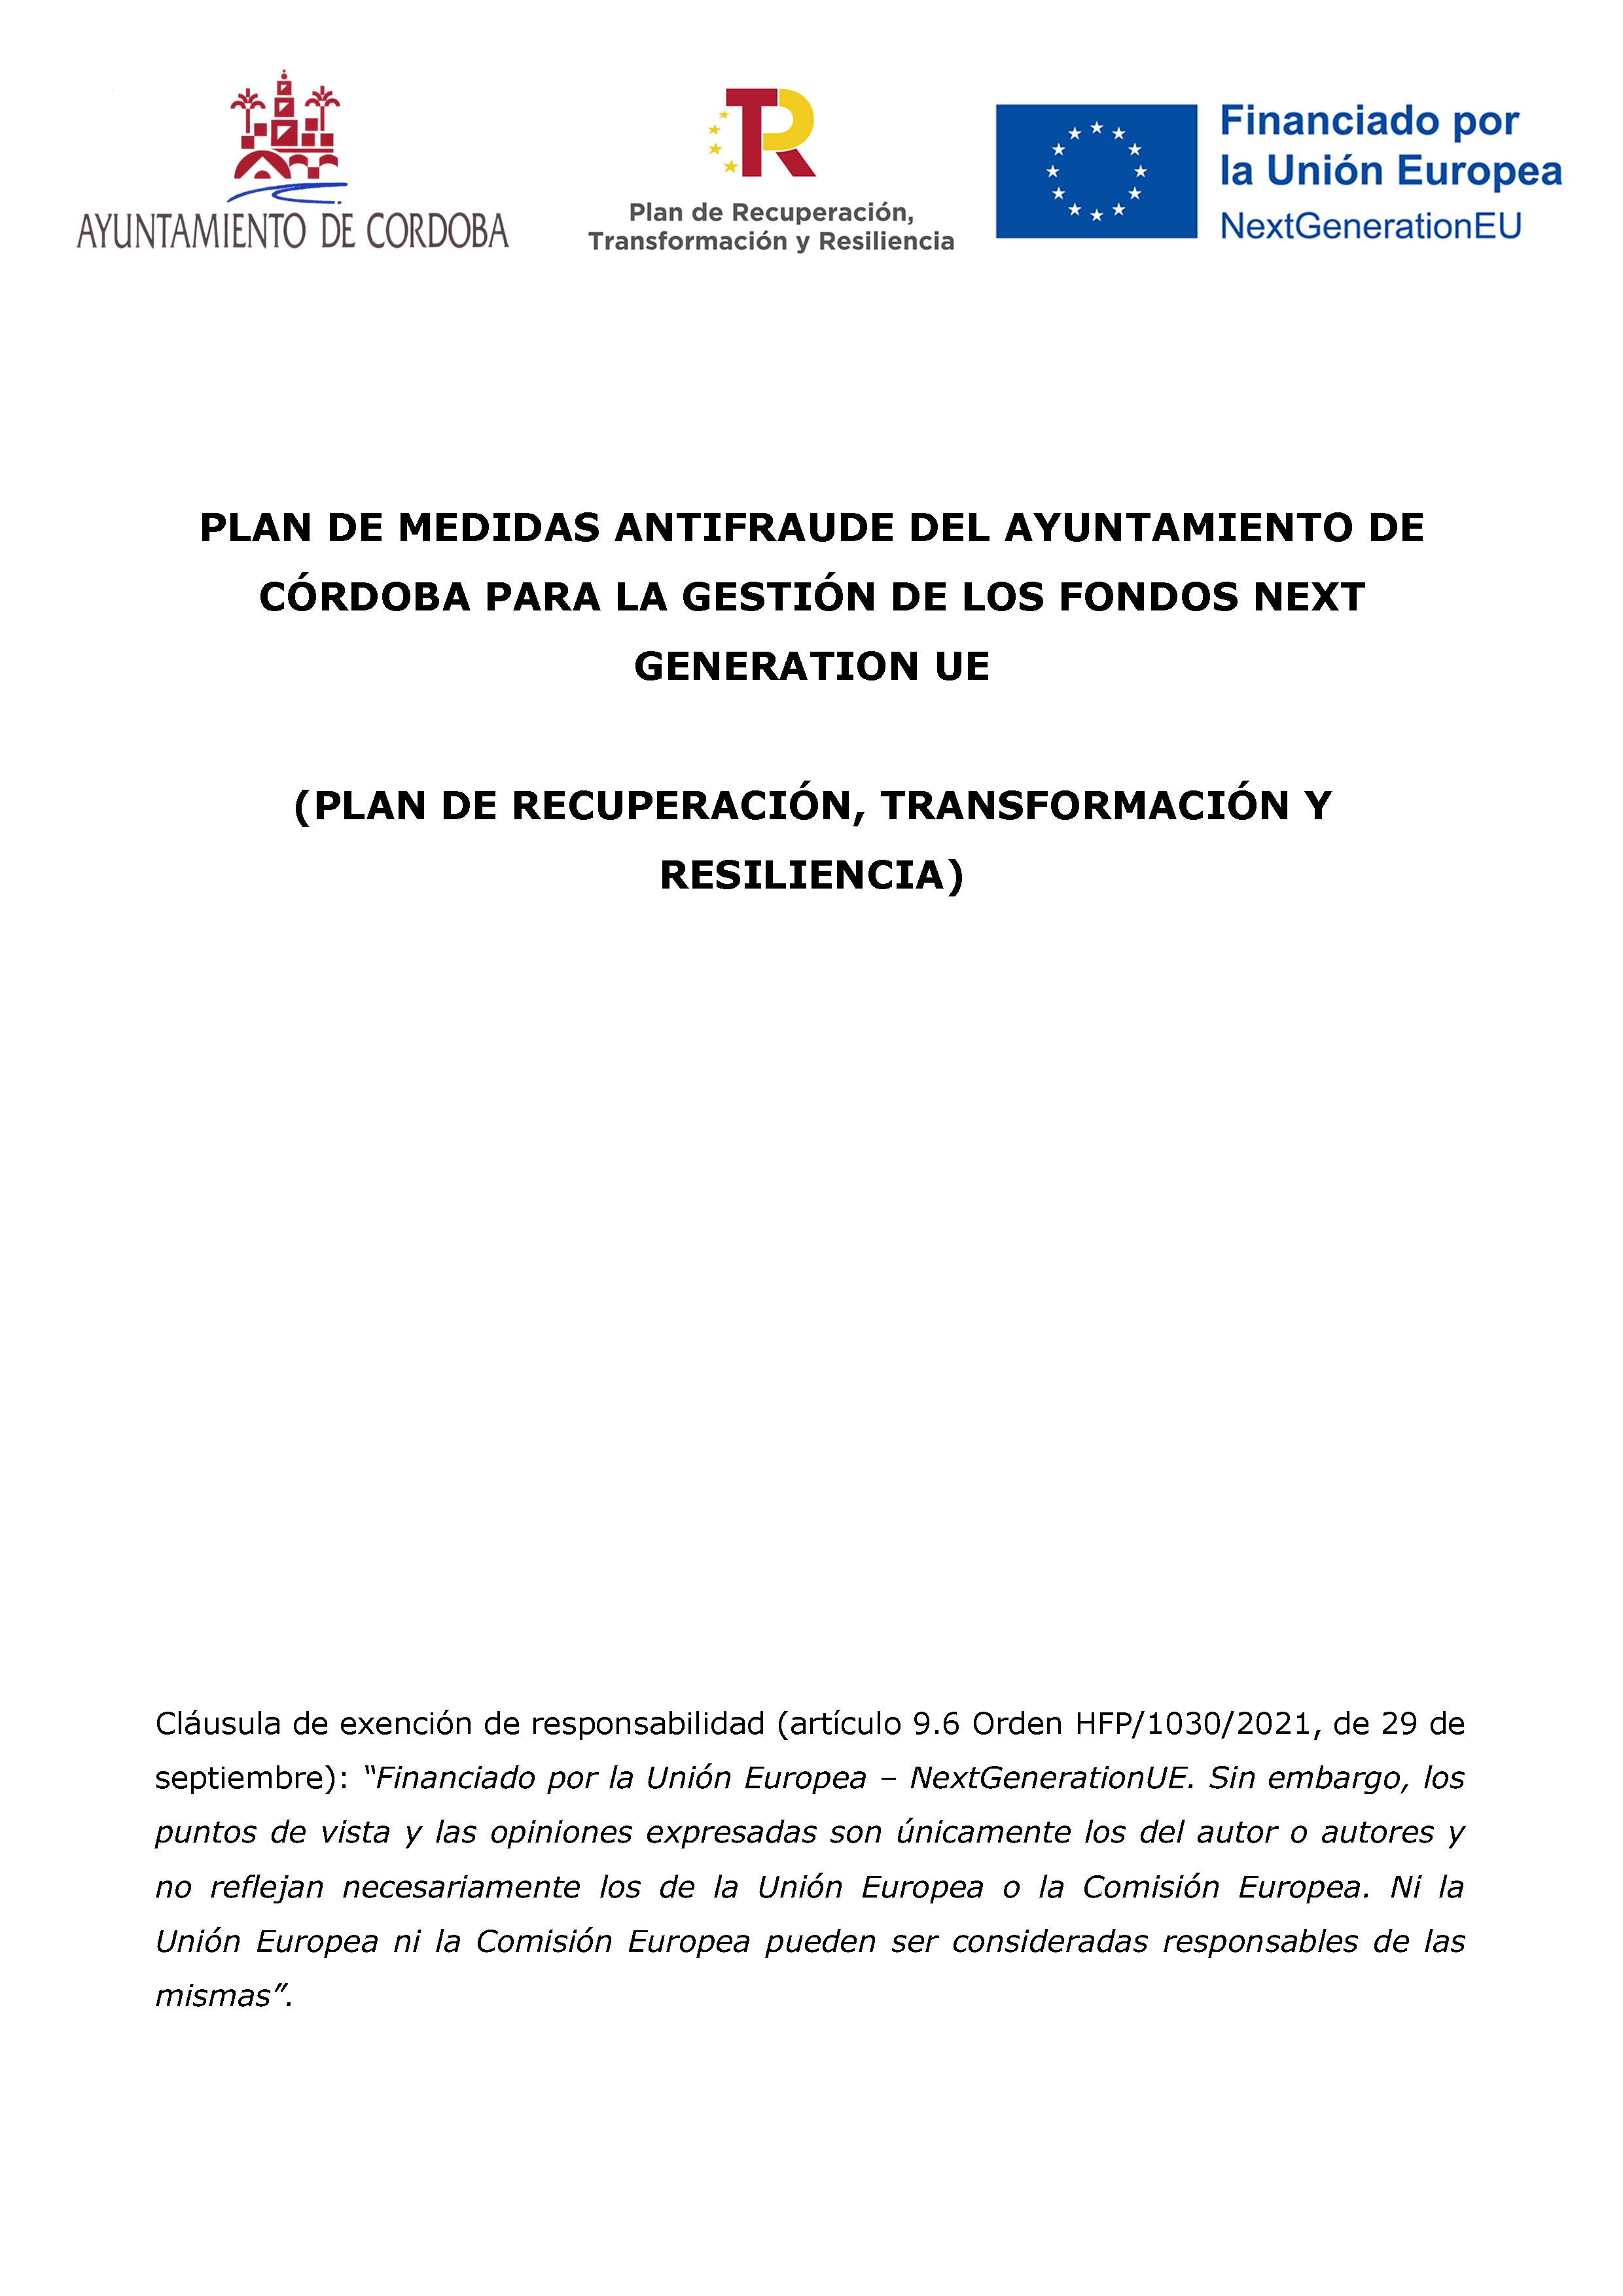 Plan de medidas antifraude del Ayuntamiento de Córdoba